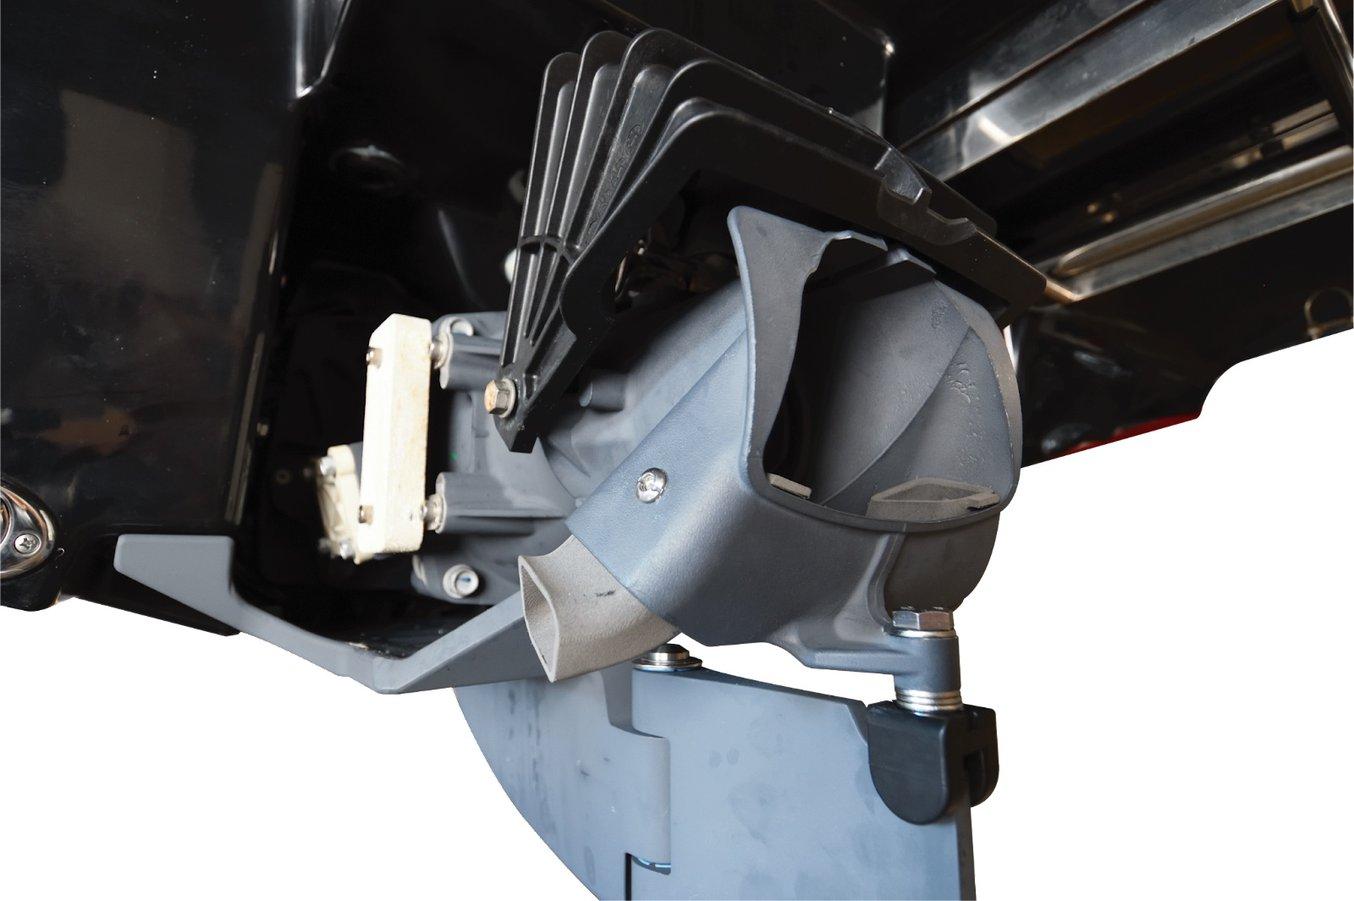 Propulsores de motor de JetBoat Pilot (las piezas de color gris claro en la abertura del motor) impresos en la Fuse 1